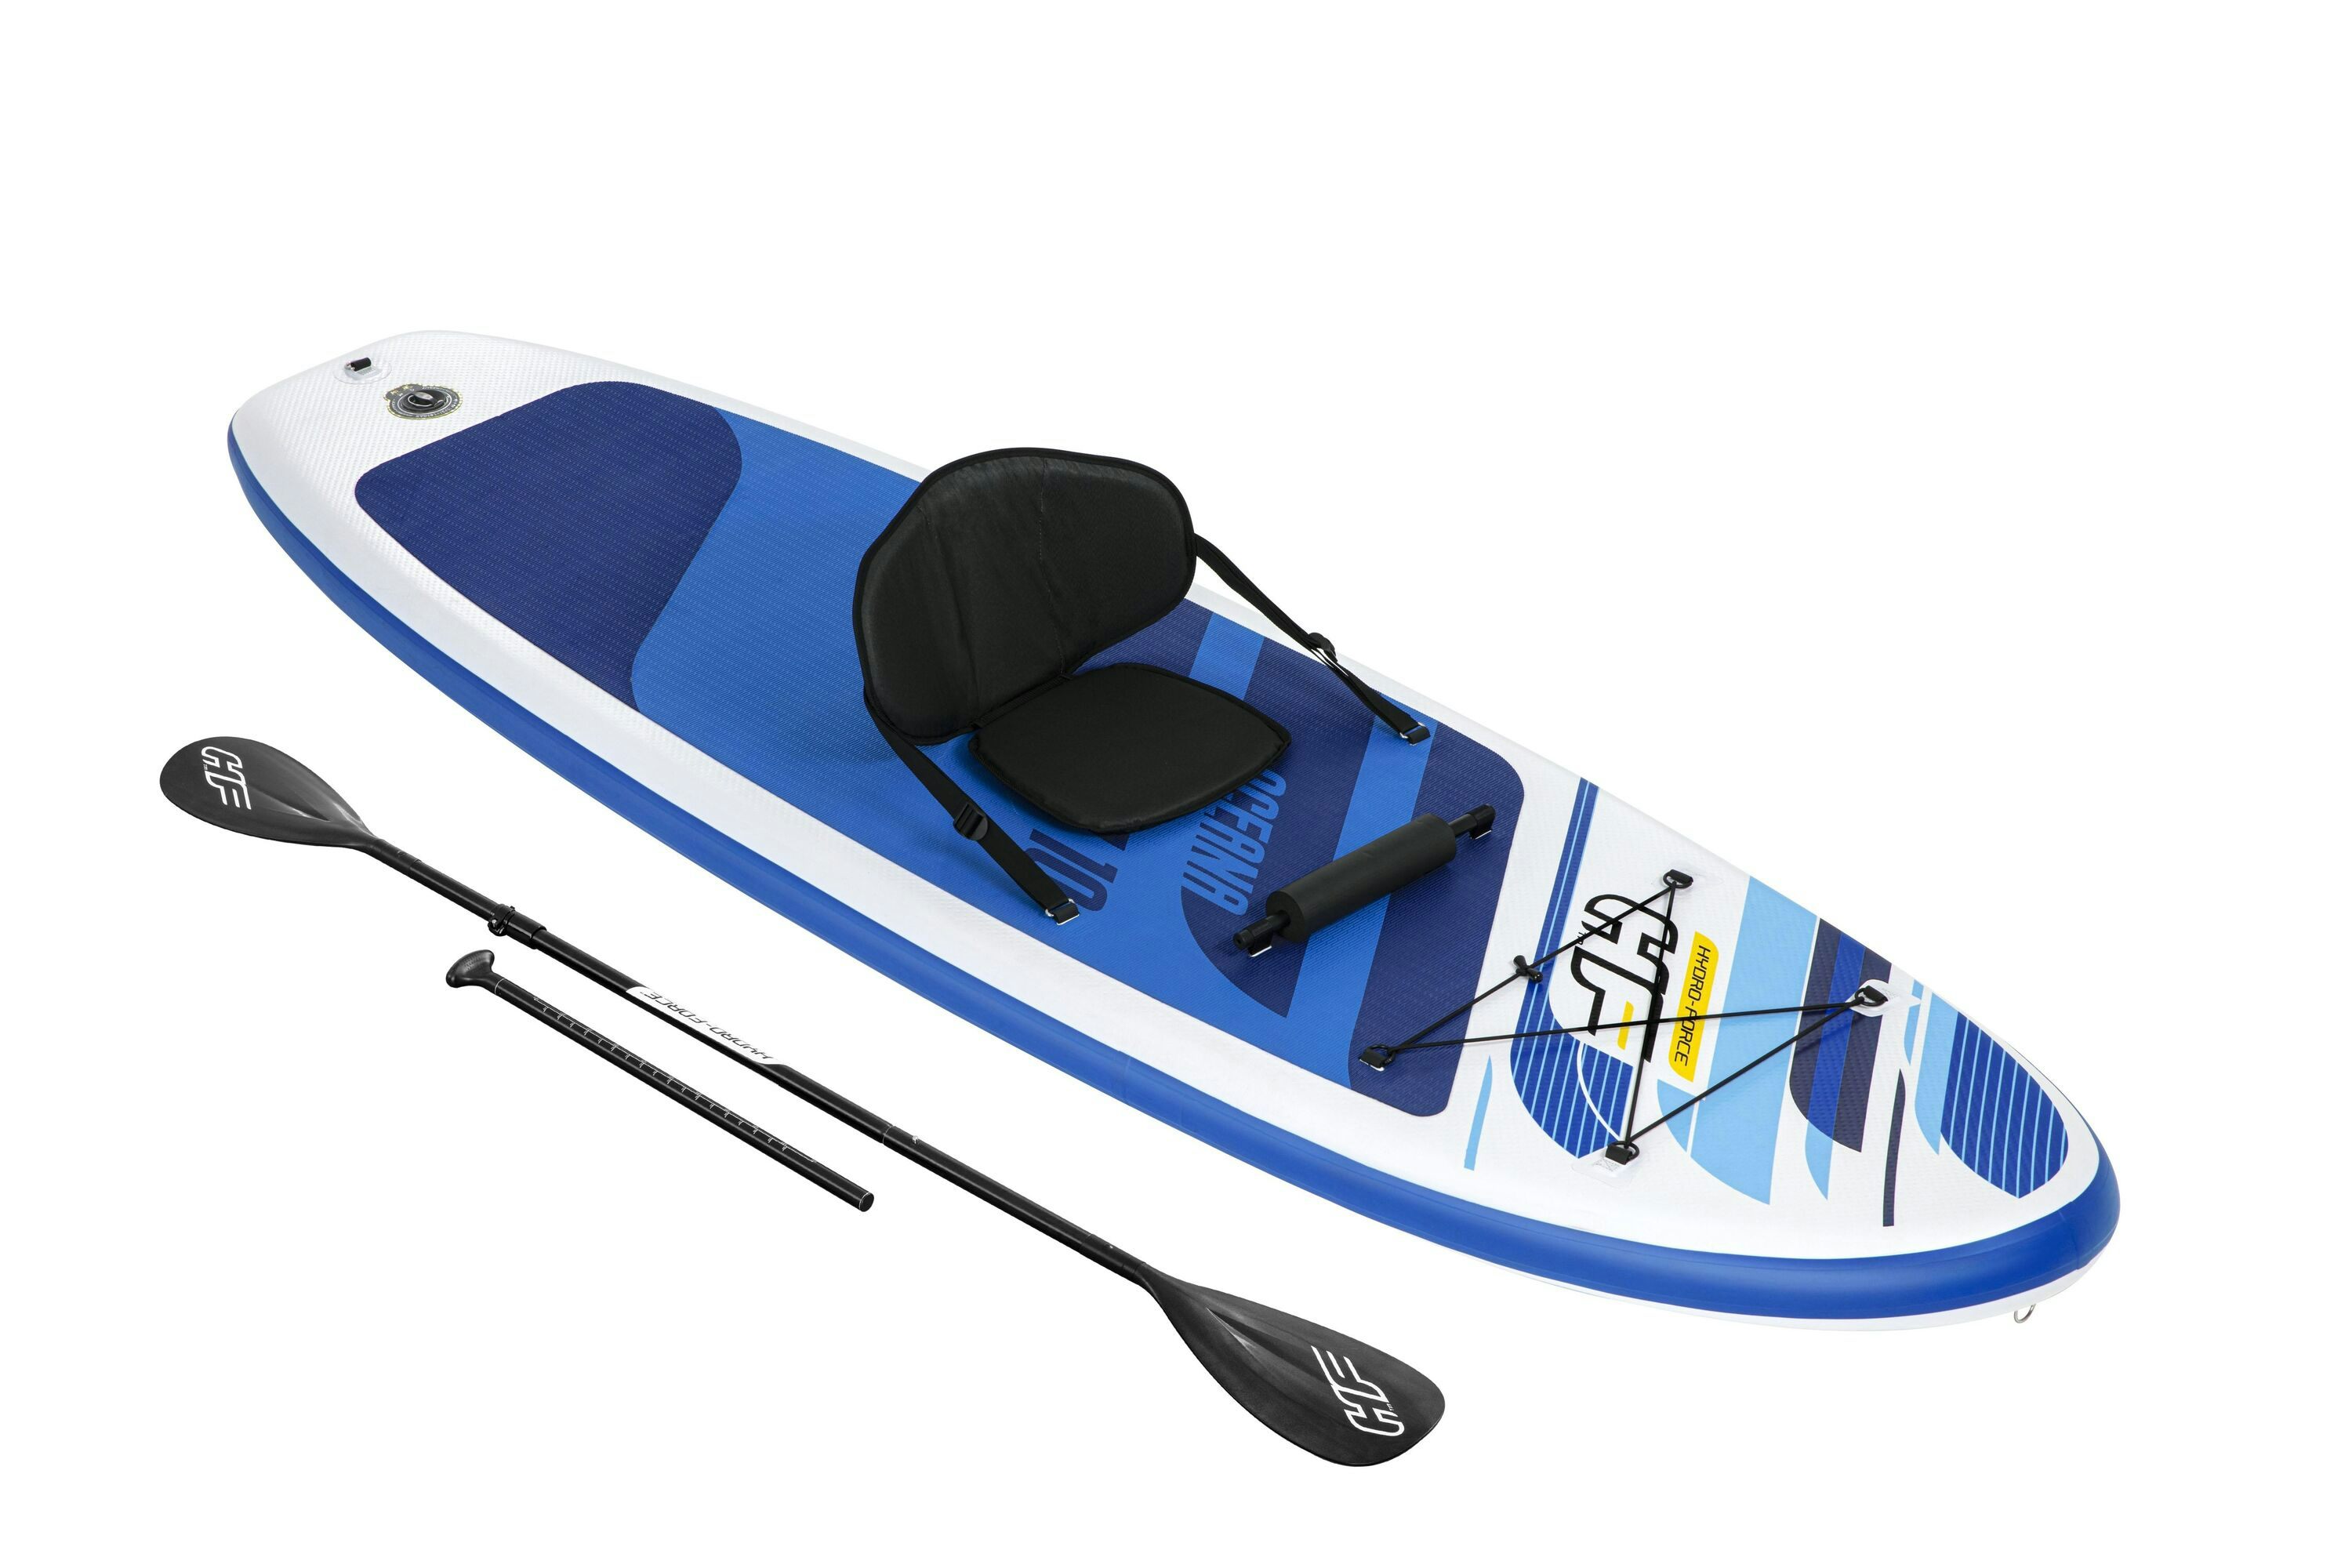 Sports d'eau Paddle SUP gonflable Hydro-Force™ Oceana 305 x 84 x 12 cm transformable en kayak avec siège, cale-pieds, pagaie, pompe et sac à dos de transport Bestway 1